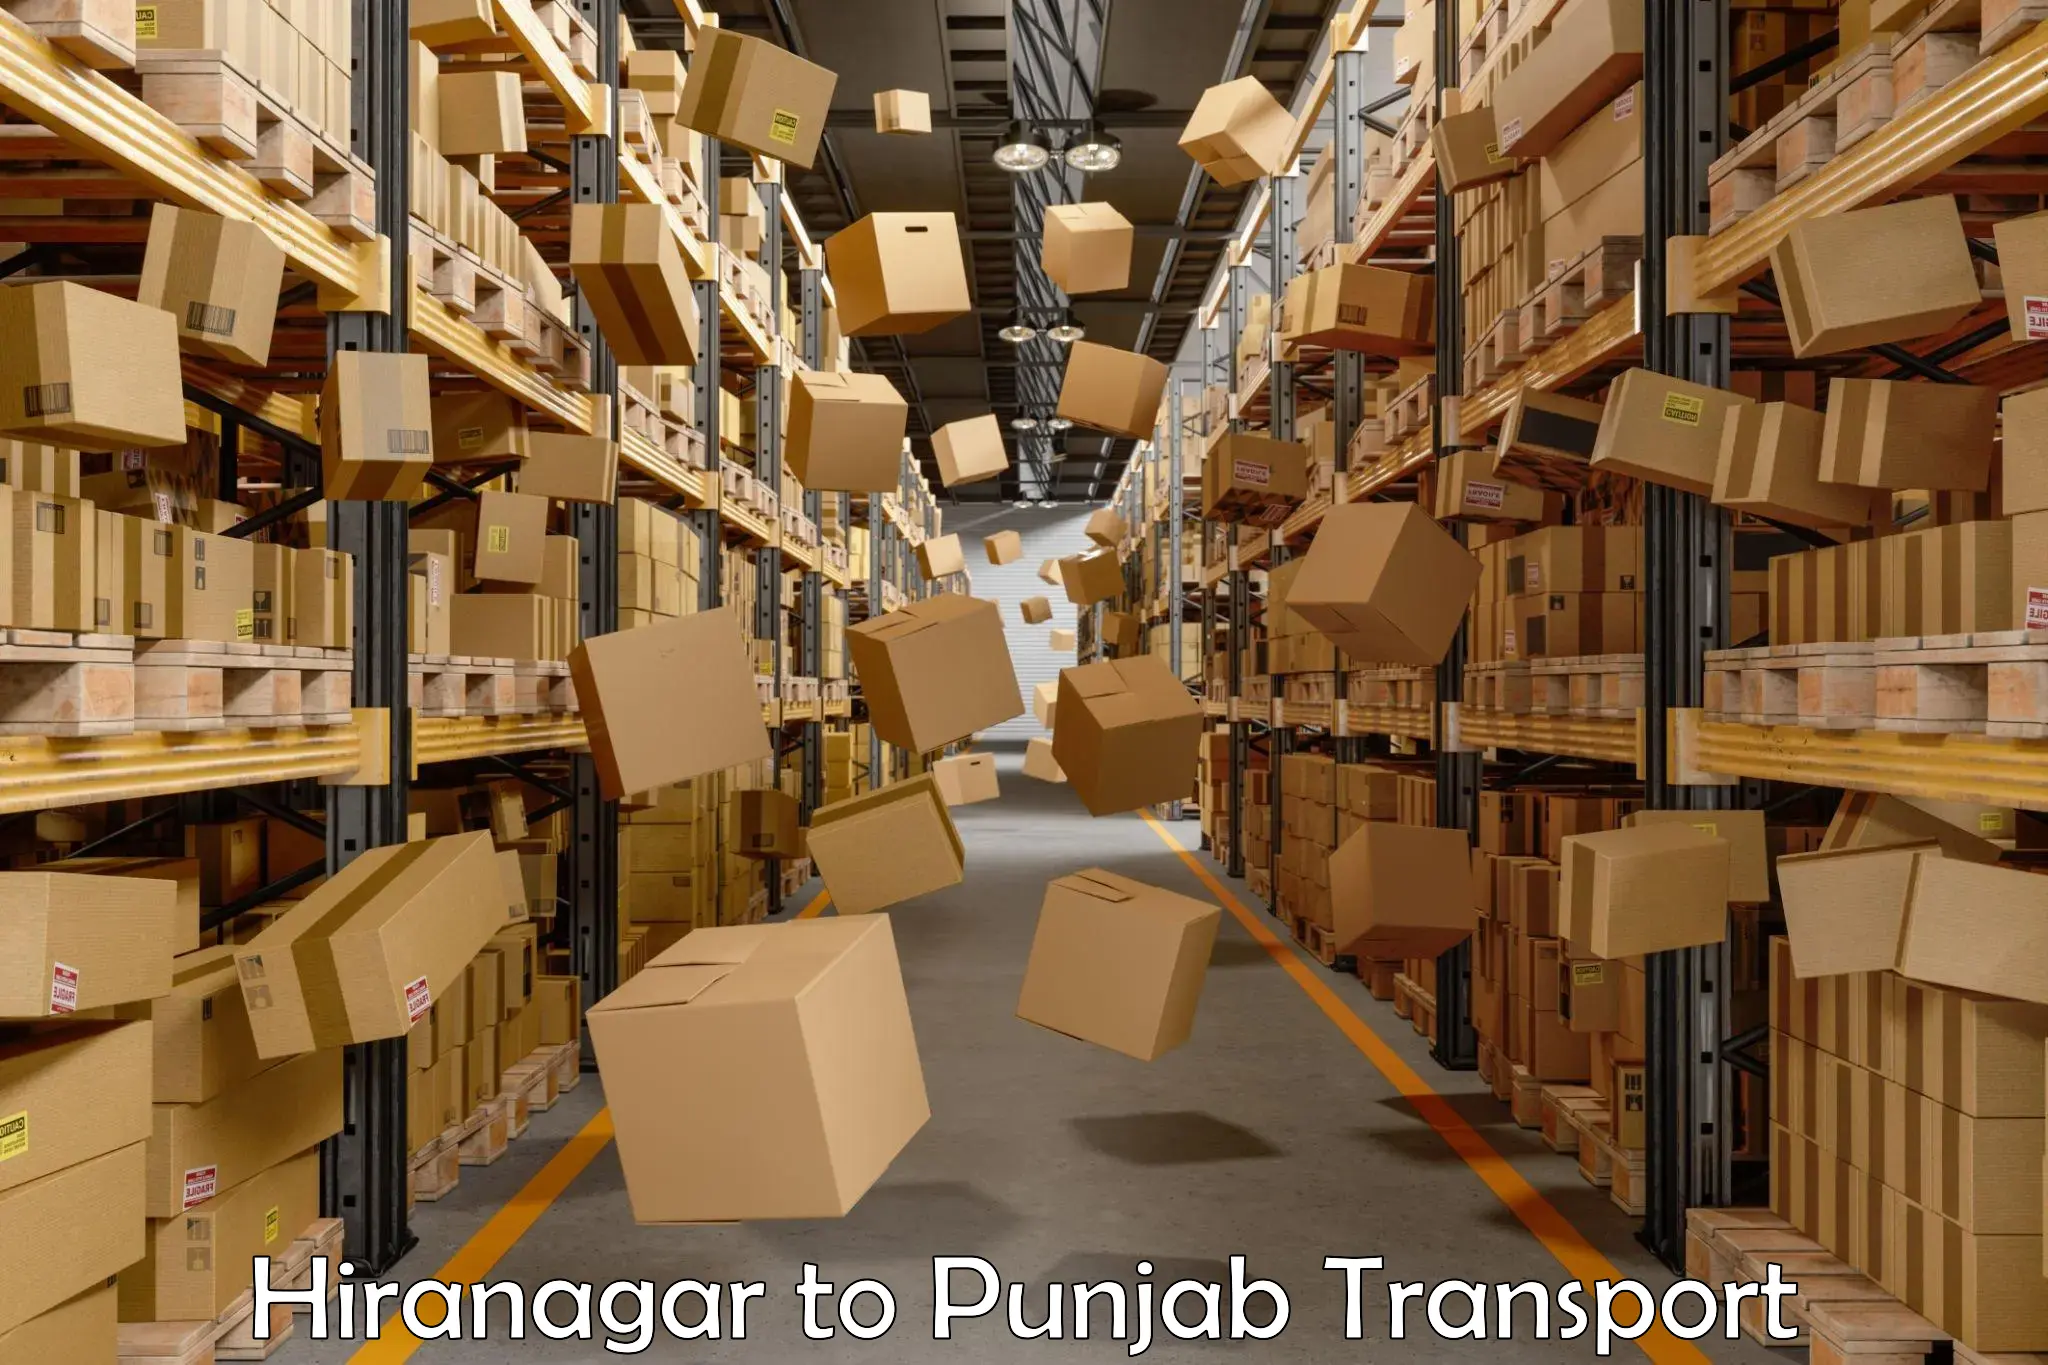 All India transport service Hiranagar to Anandpur Sahib